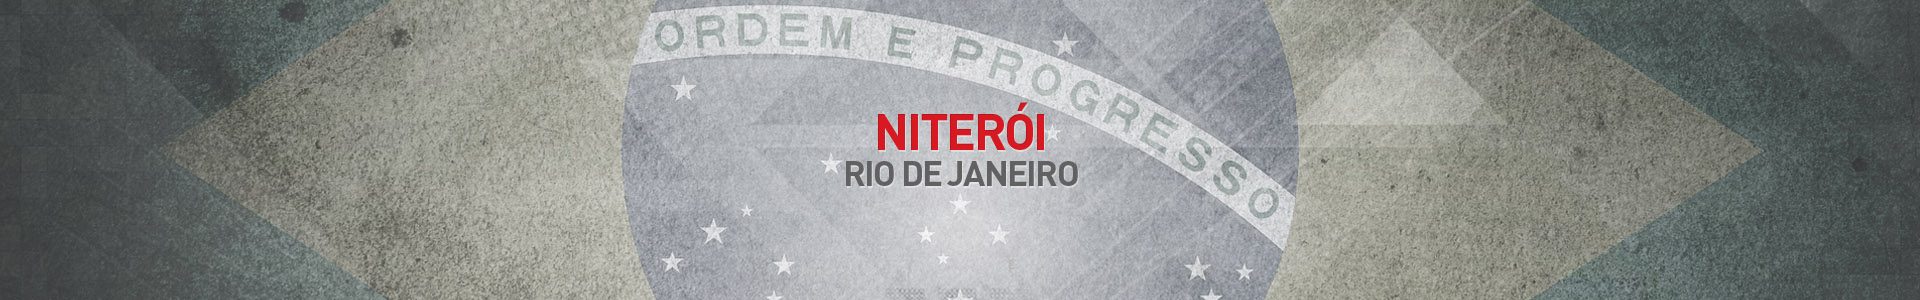 Topo-Cidades-Niteroi-RJ-SBA